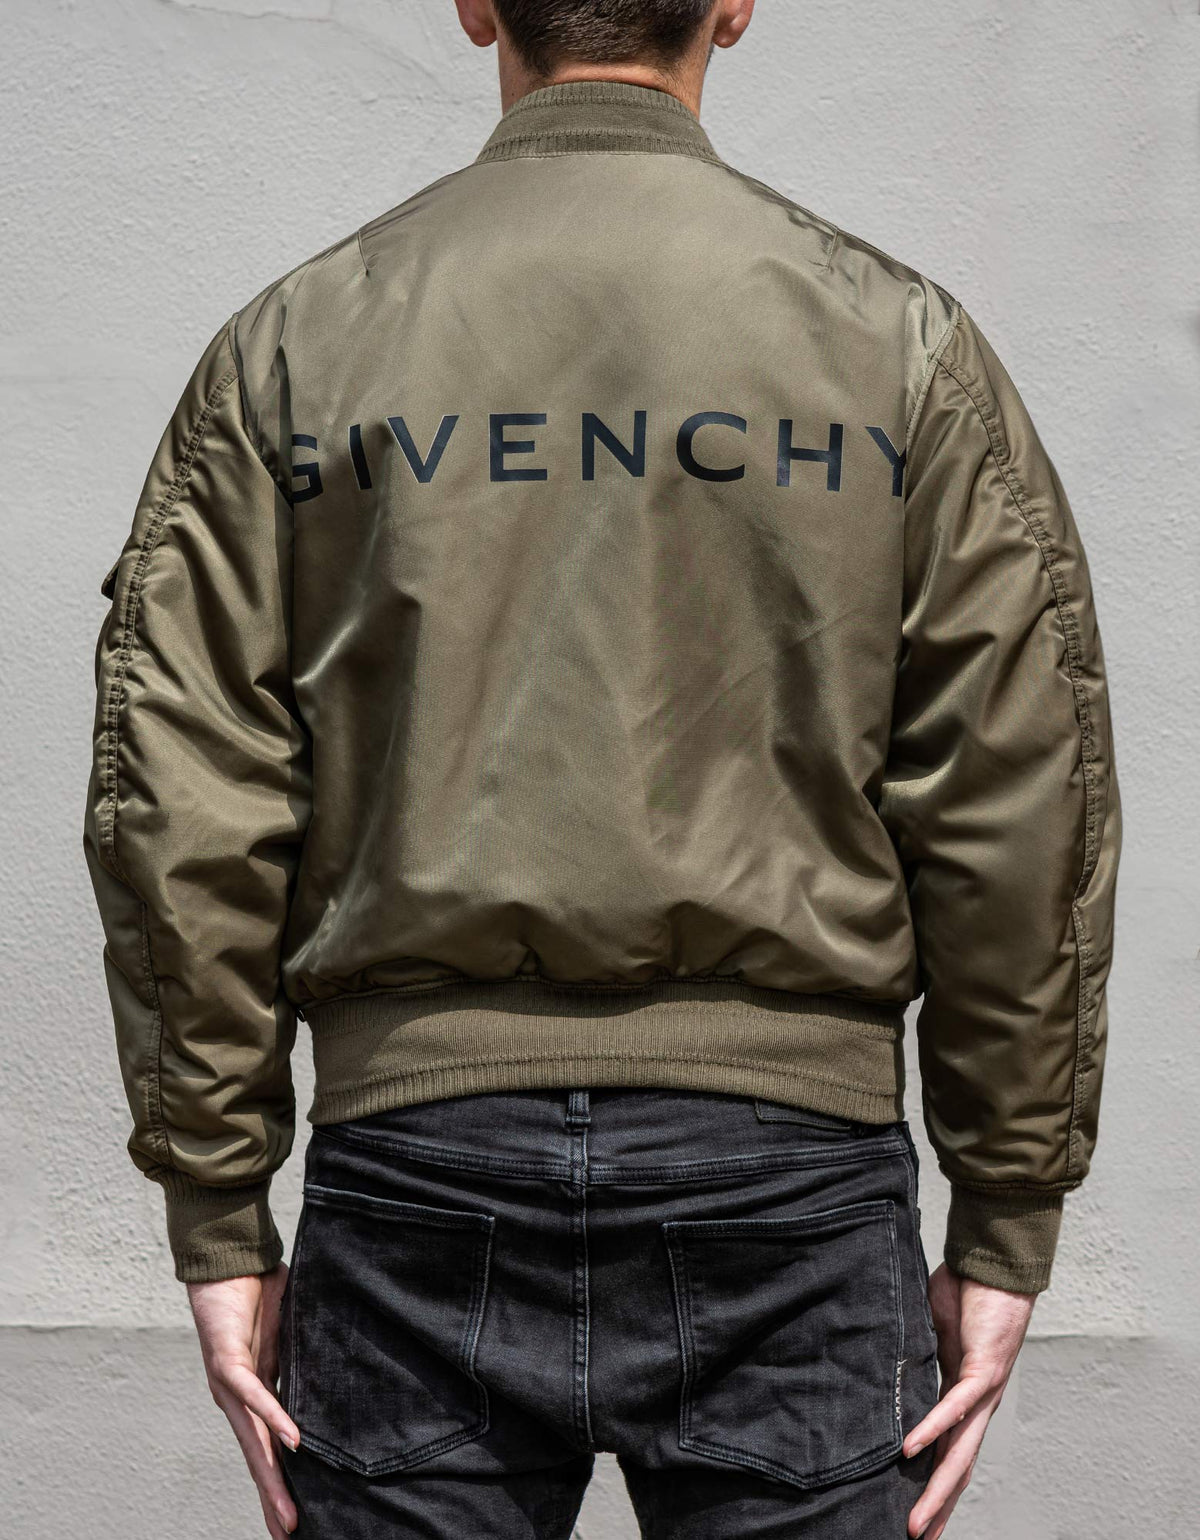 Givenchy Khaki Logo Bomber Jacket